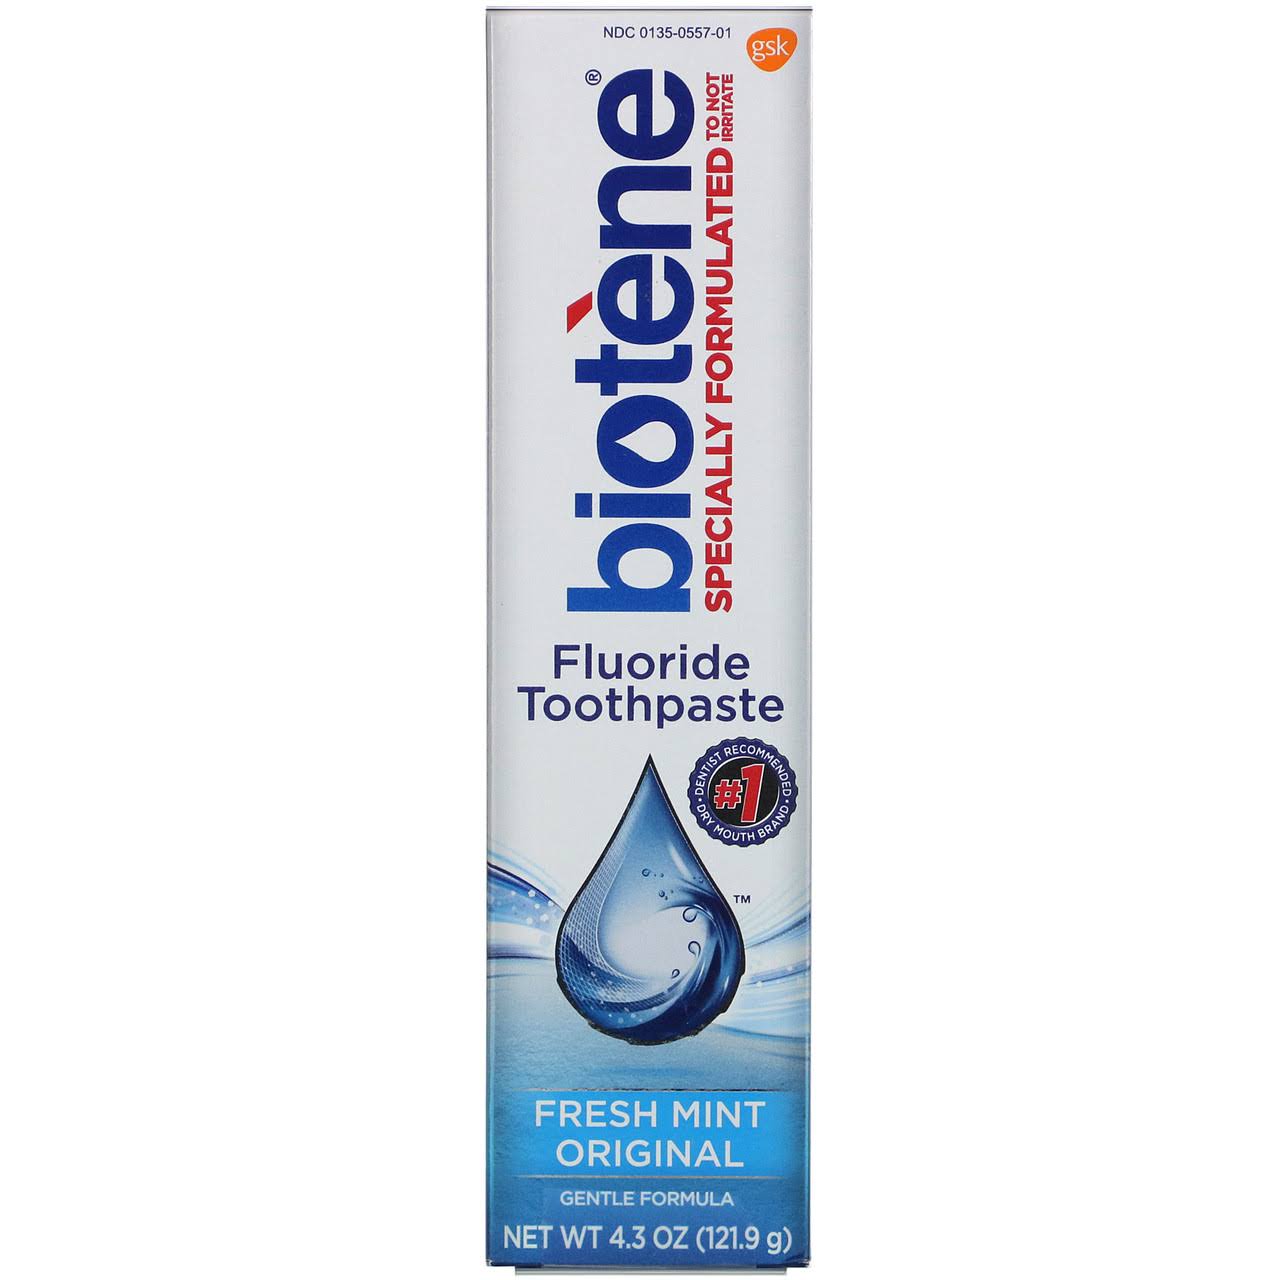 Biotene Gentle Formula Fluoride Toothpaste - Fresh Mint, 4.3oz